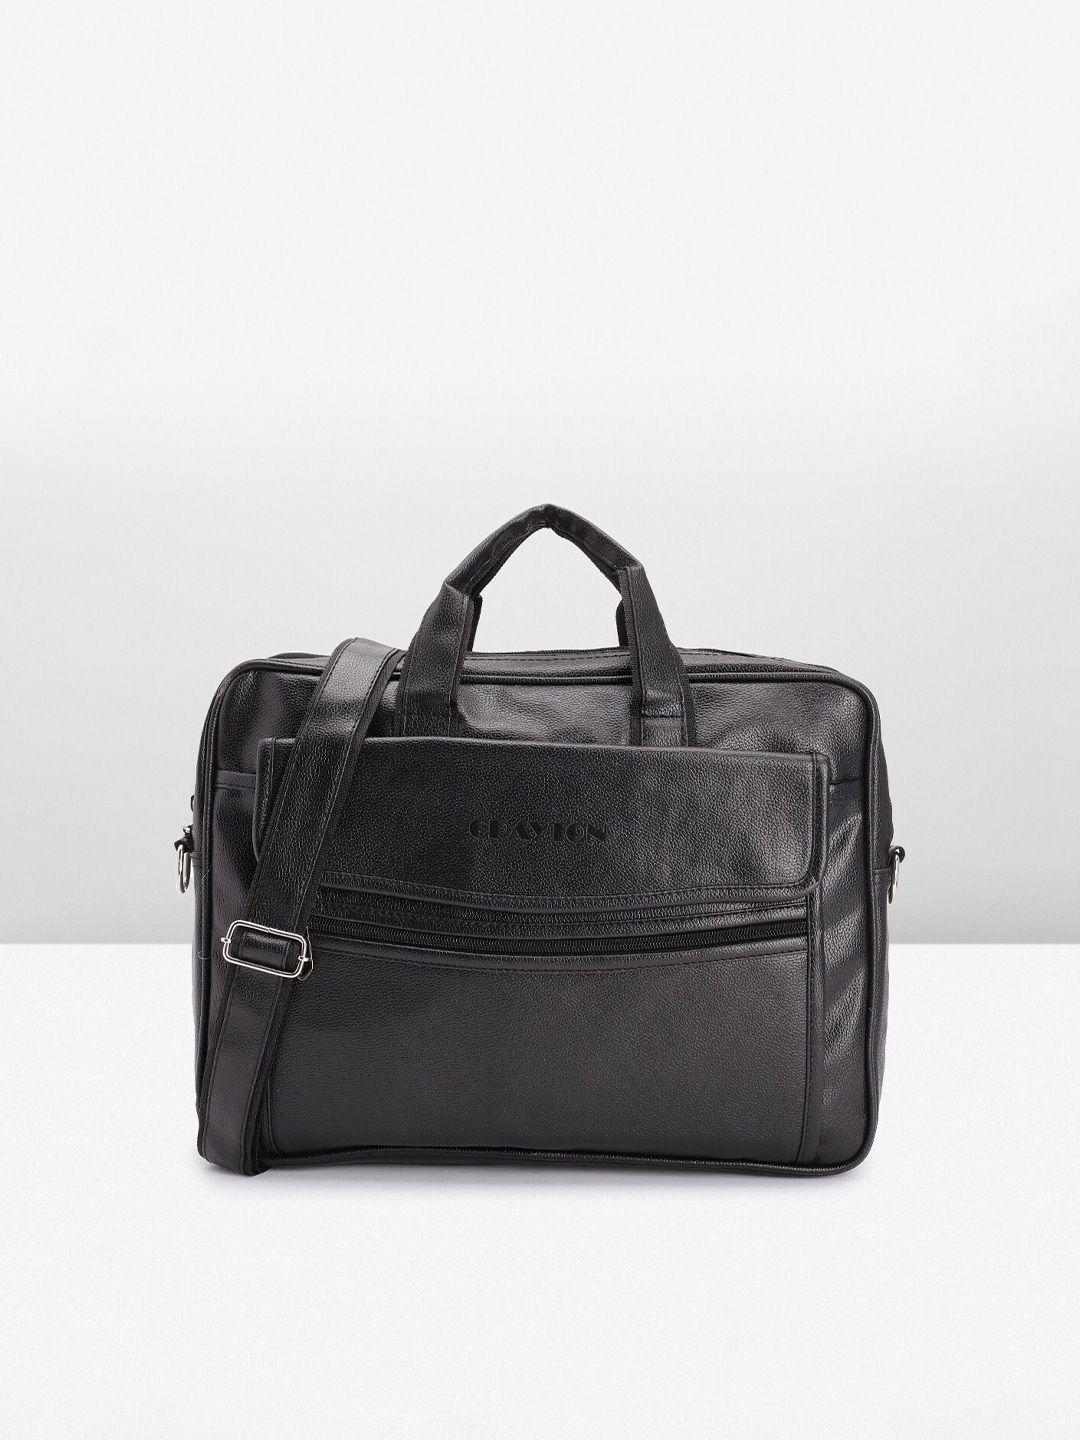 crayton unisex leather laptop bag